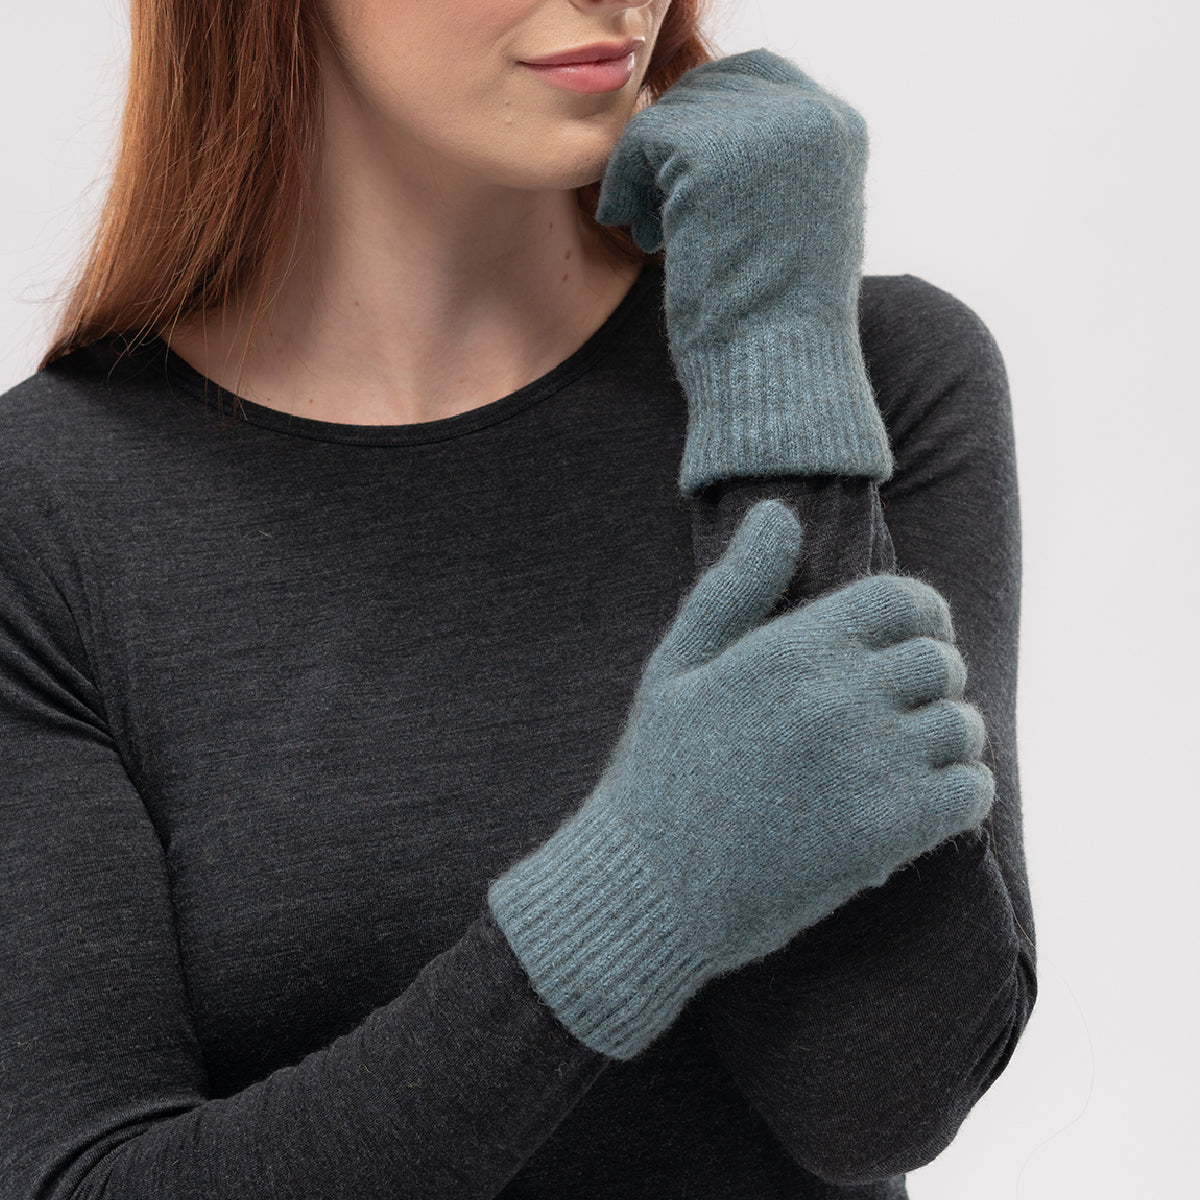 Possum Gloves